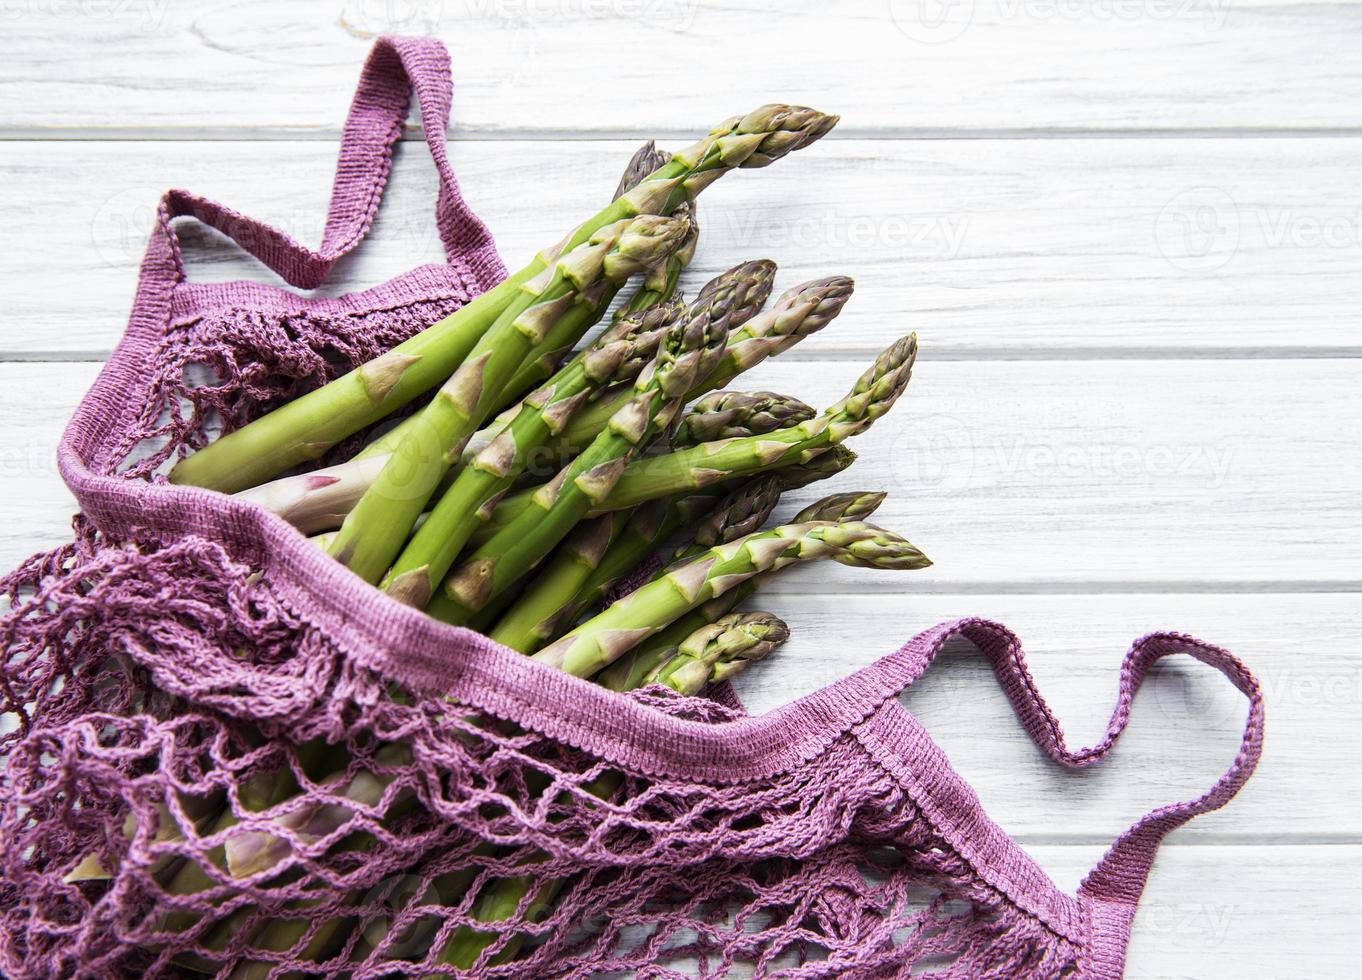 Asparagus stems in a purple bag photo